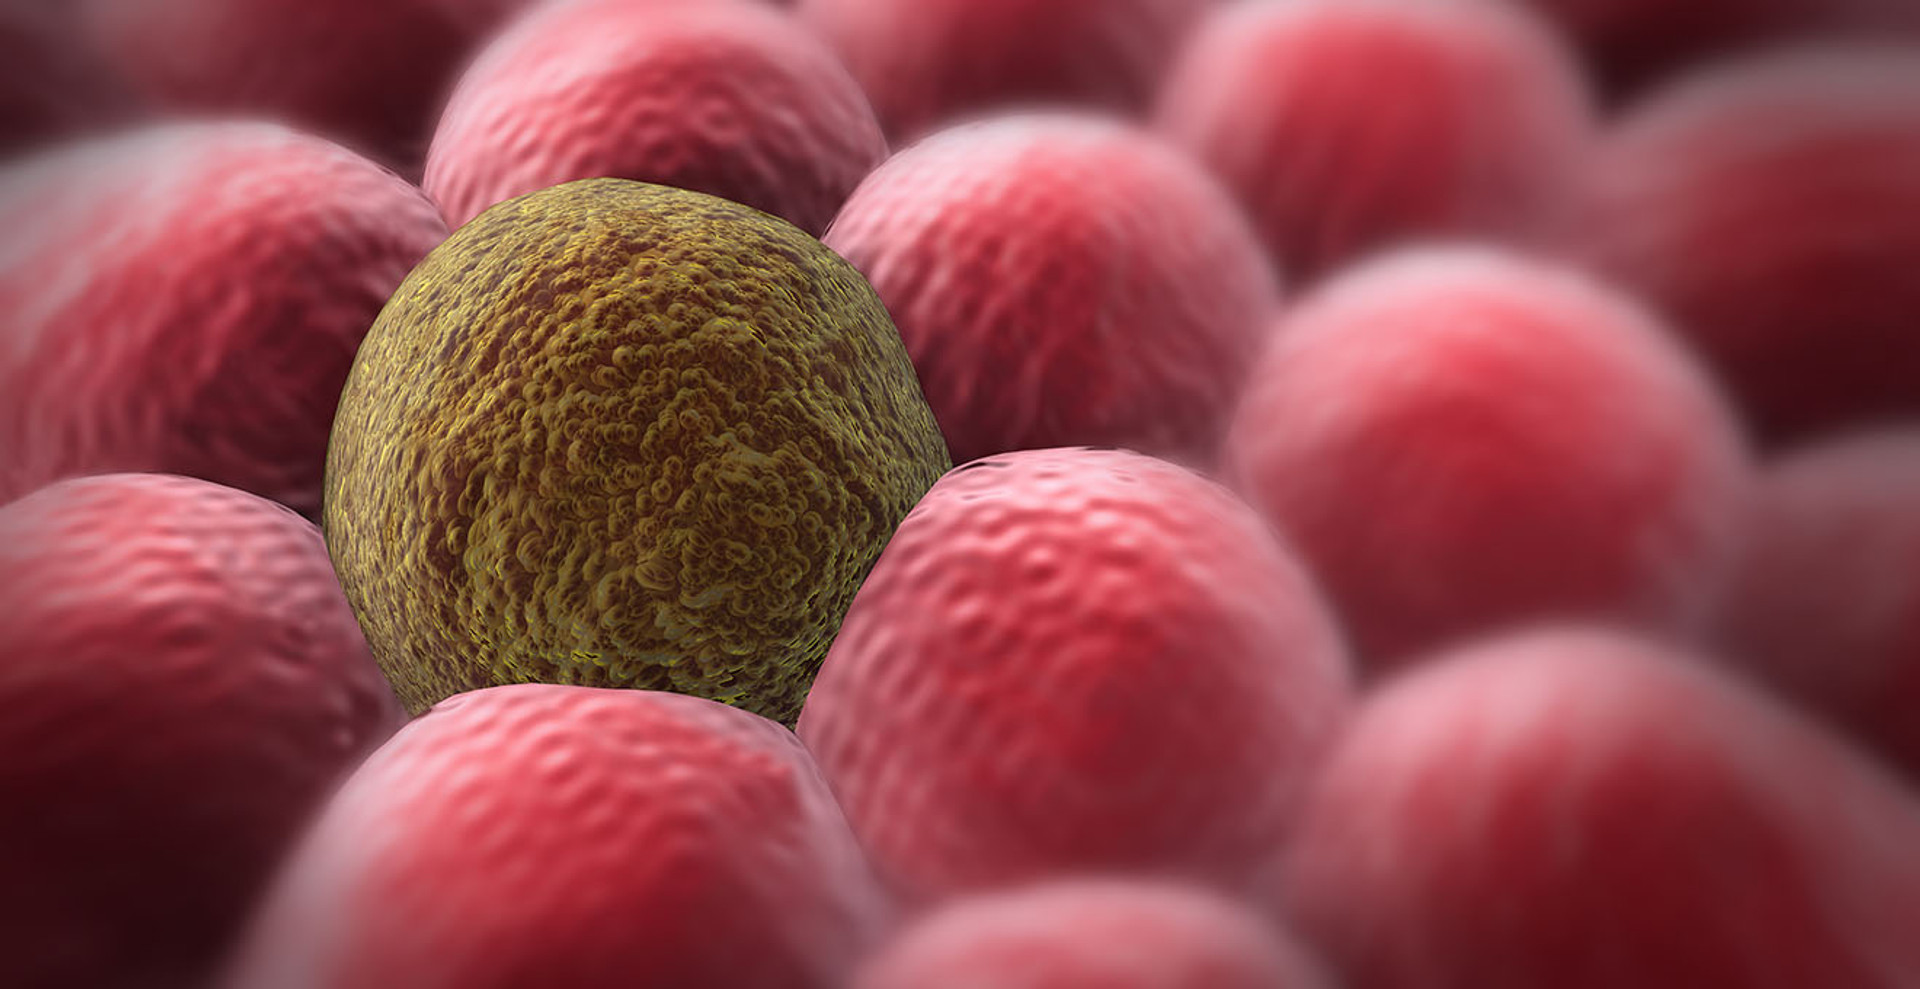 7 найрозповсюдженіших міфів про рак, які спростовує наука